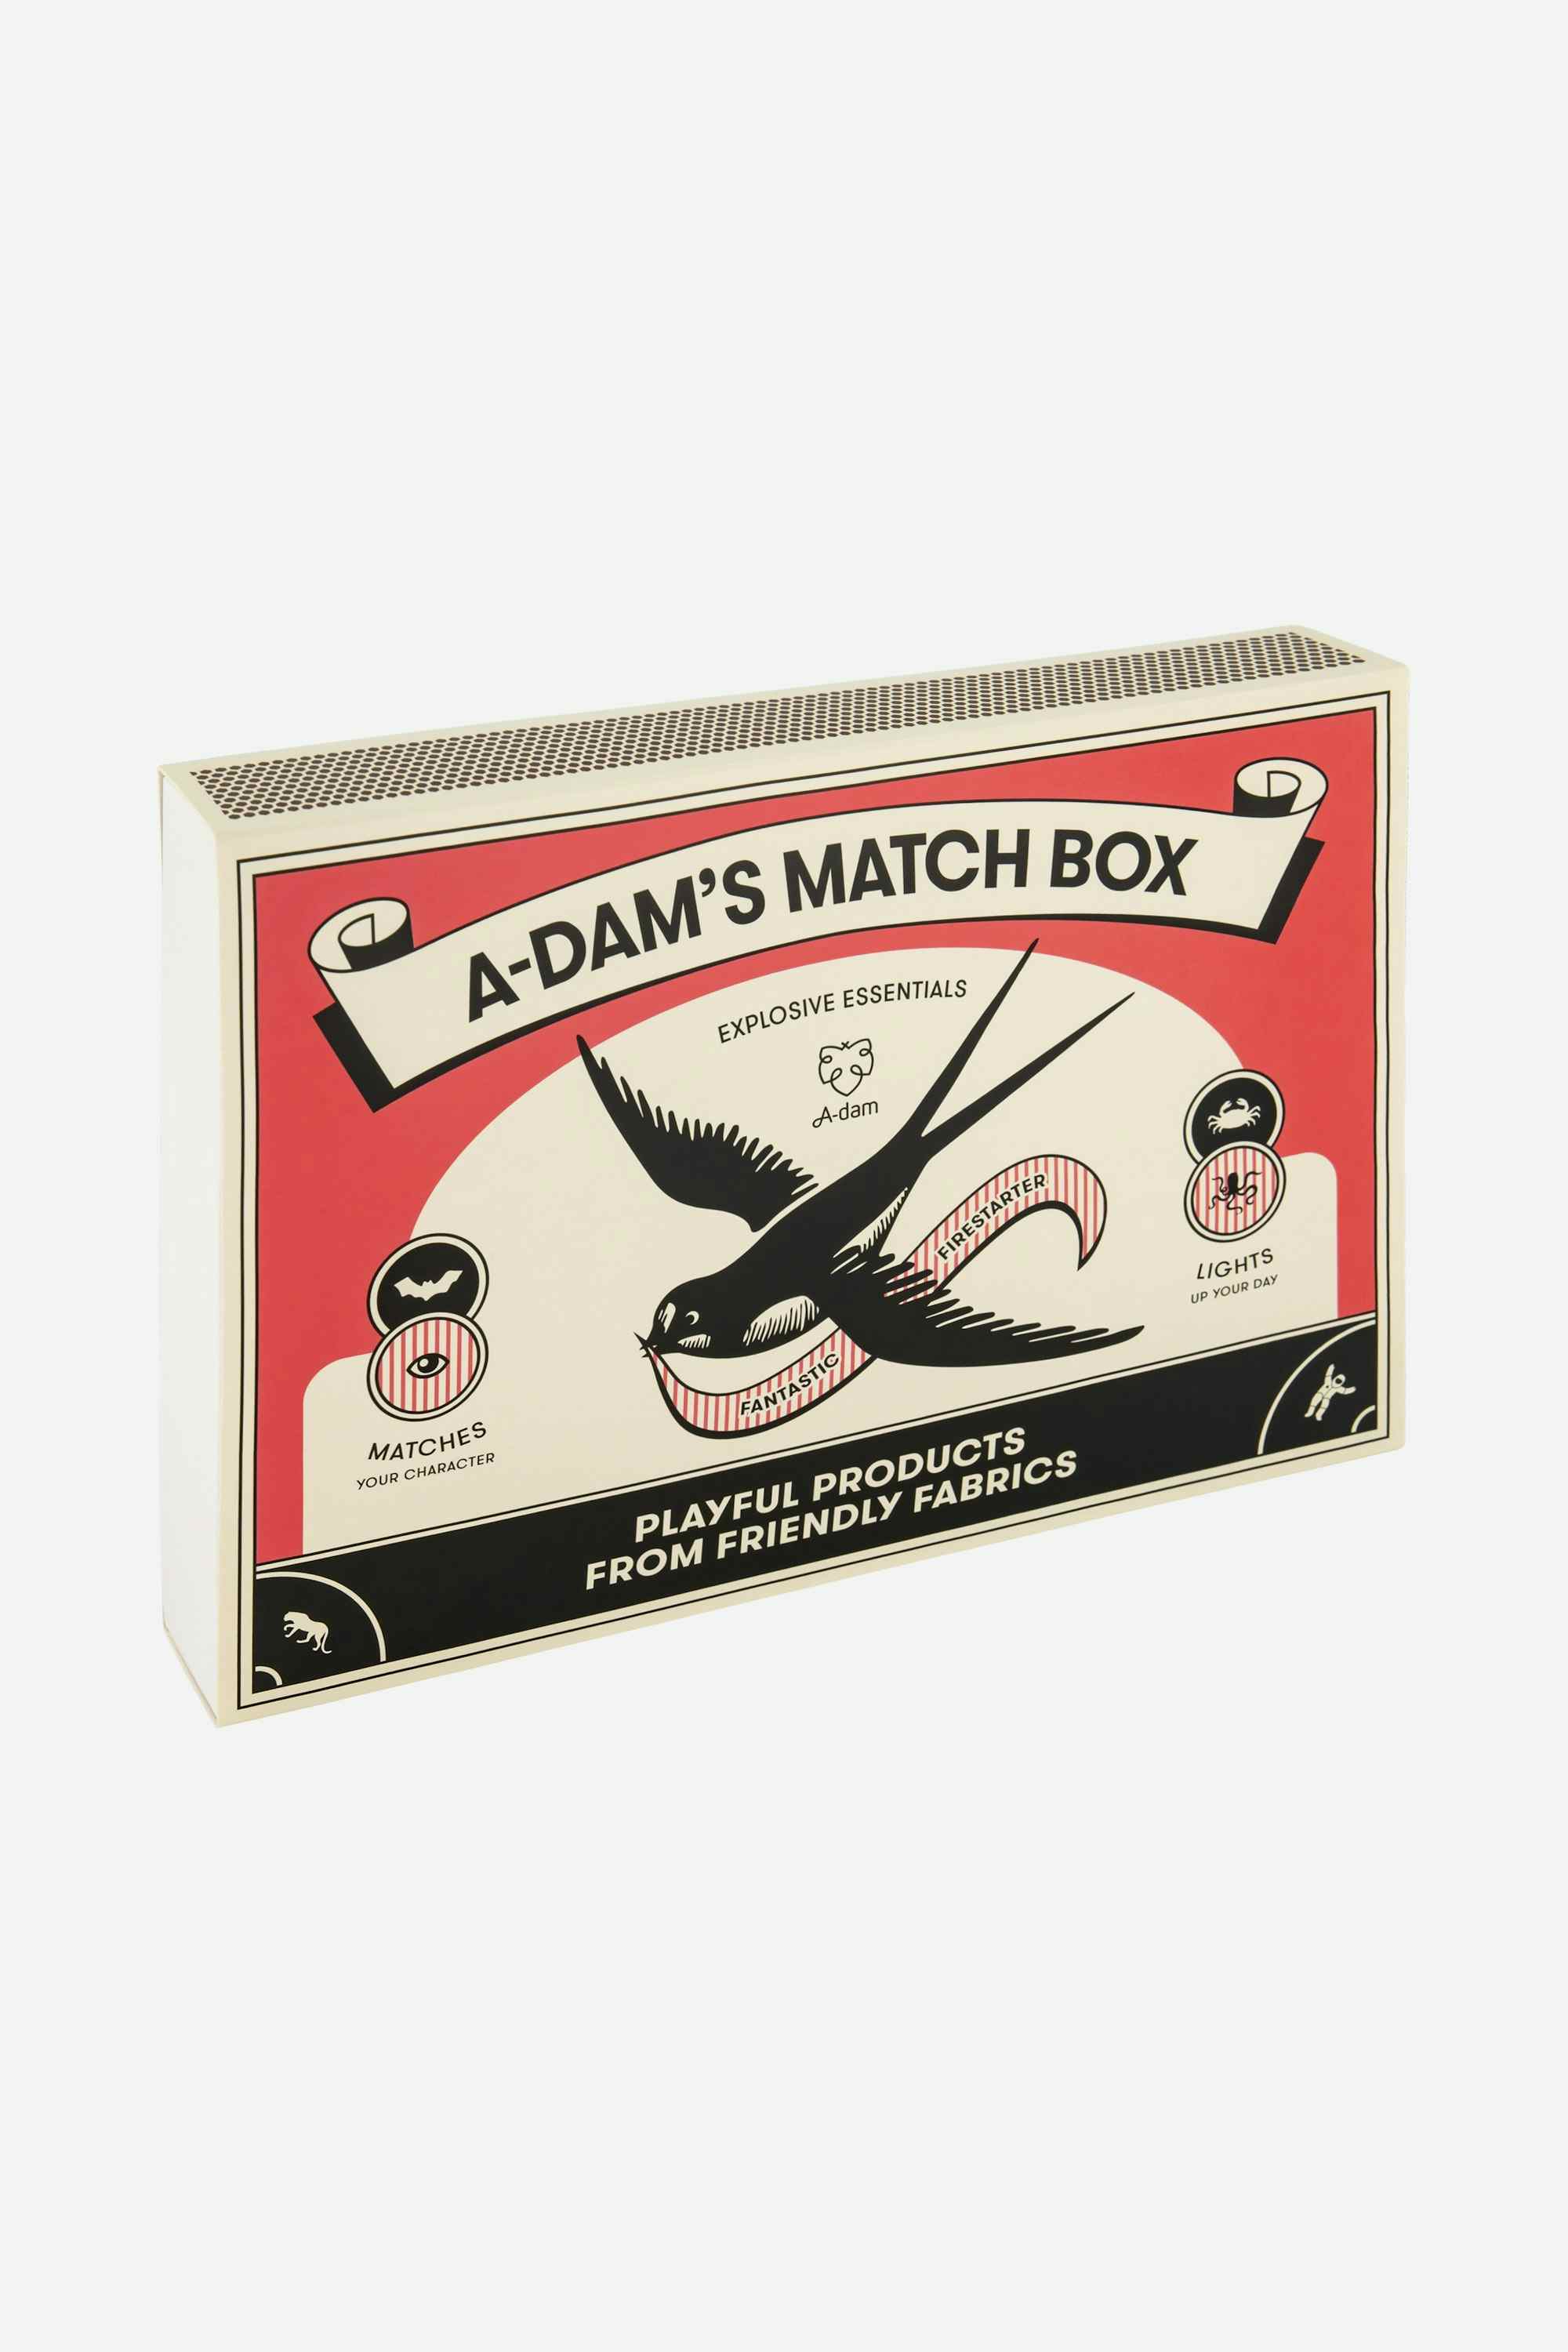 Matchbox briefs